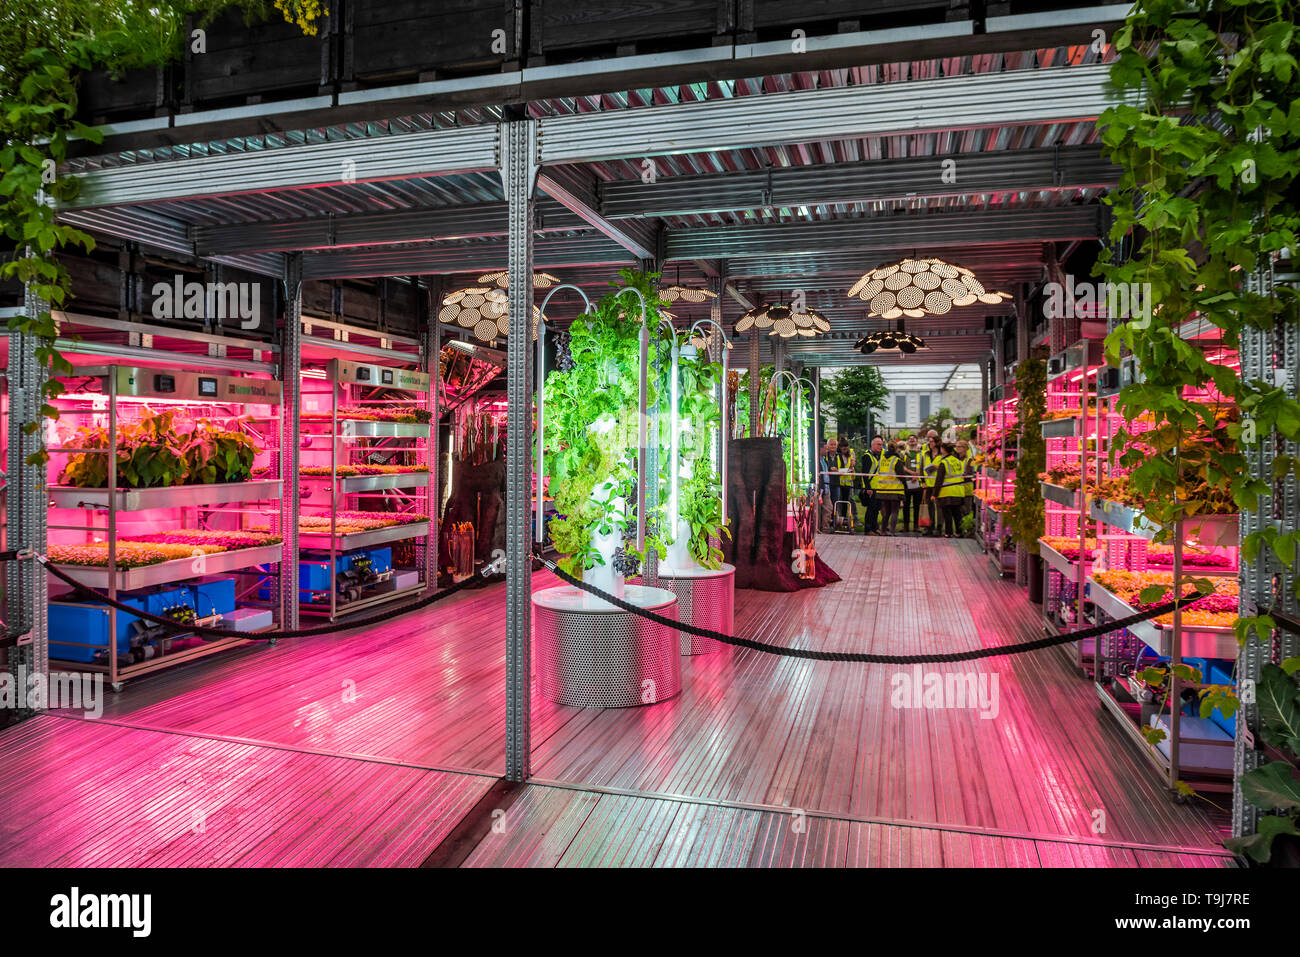 Londres, Royaume-Uni. 19 mai 2019. L'Ikea et Tom Dixon : Gardening permettra de sauver le monde, y compris les plantes hydroponiques - Appuyez sur preview journée à la RHS Chelsea Flower Show. Crédit : Guy Bell/Alamy Live News Banque D'Images